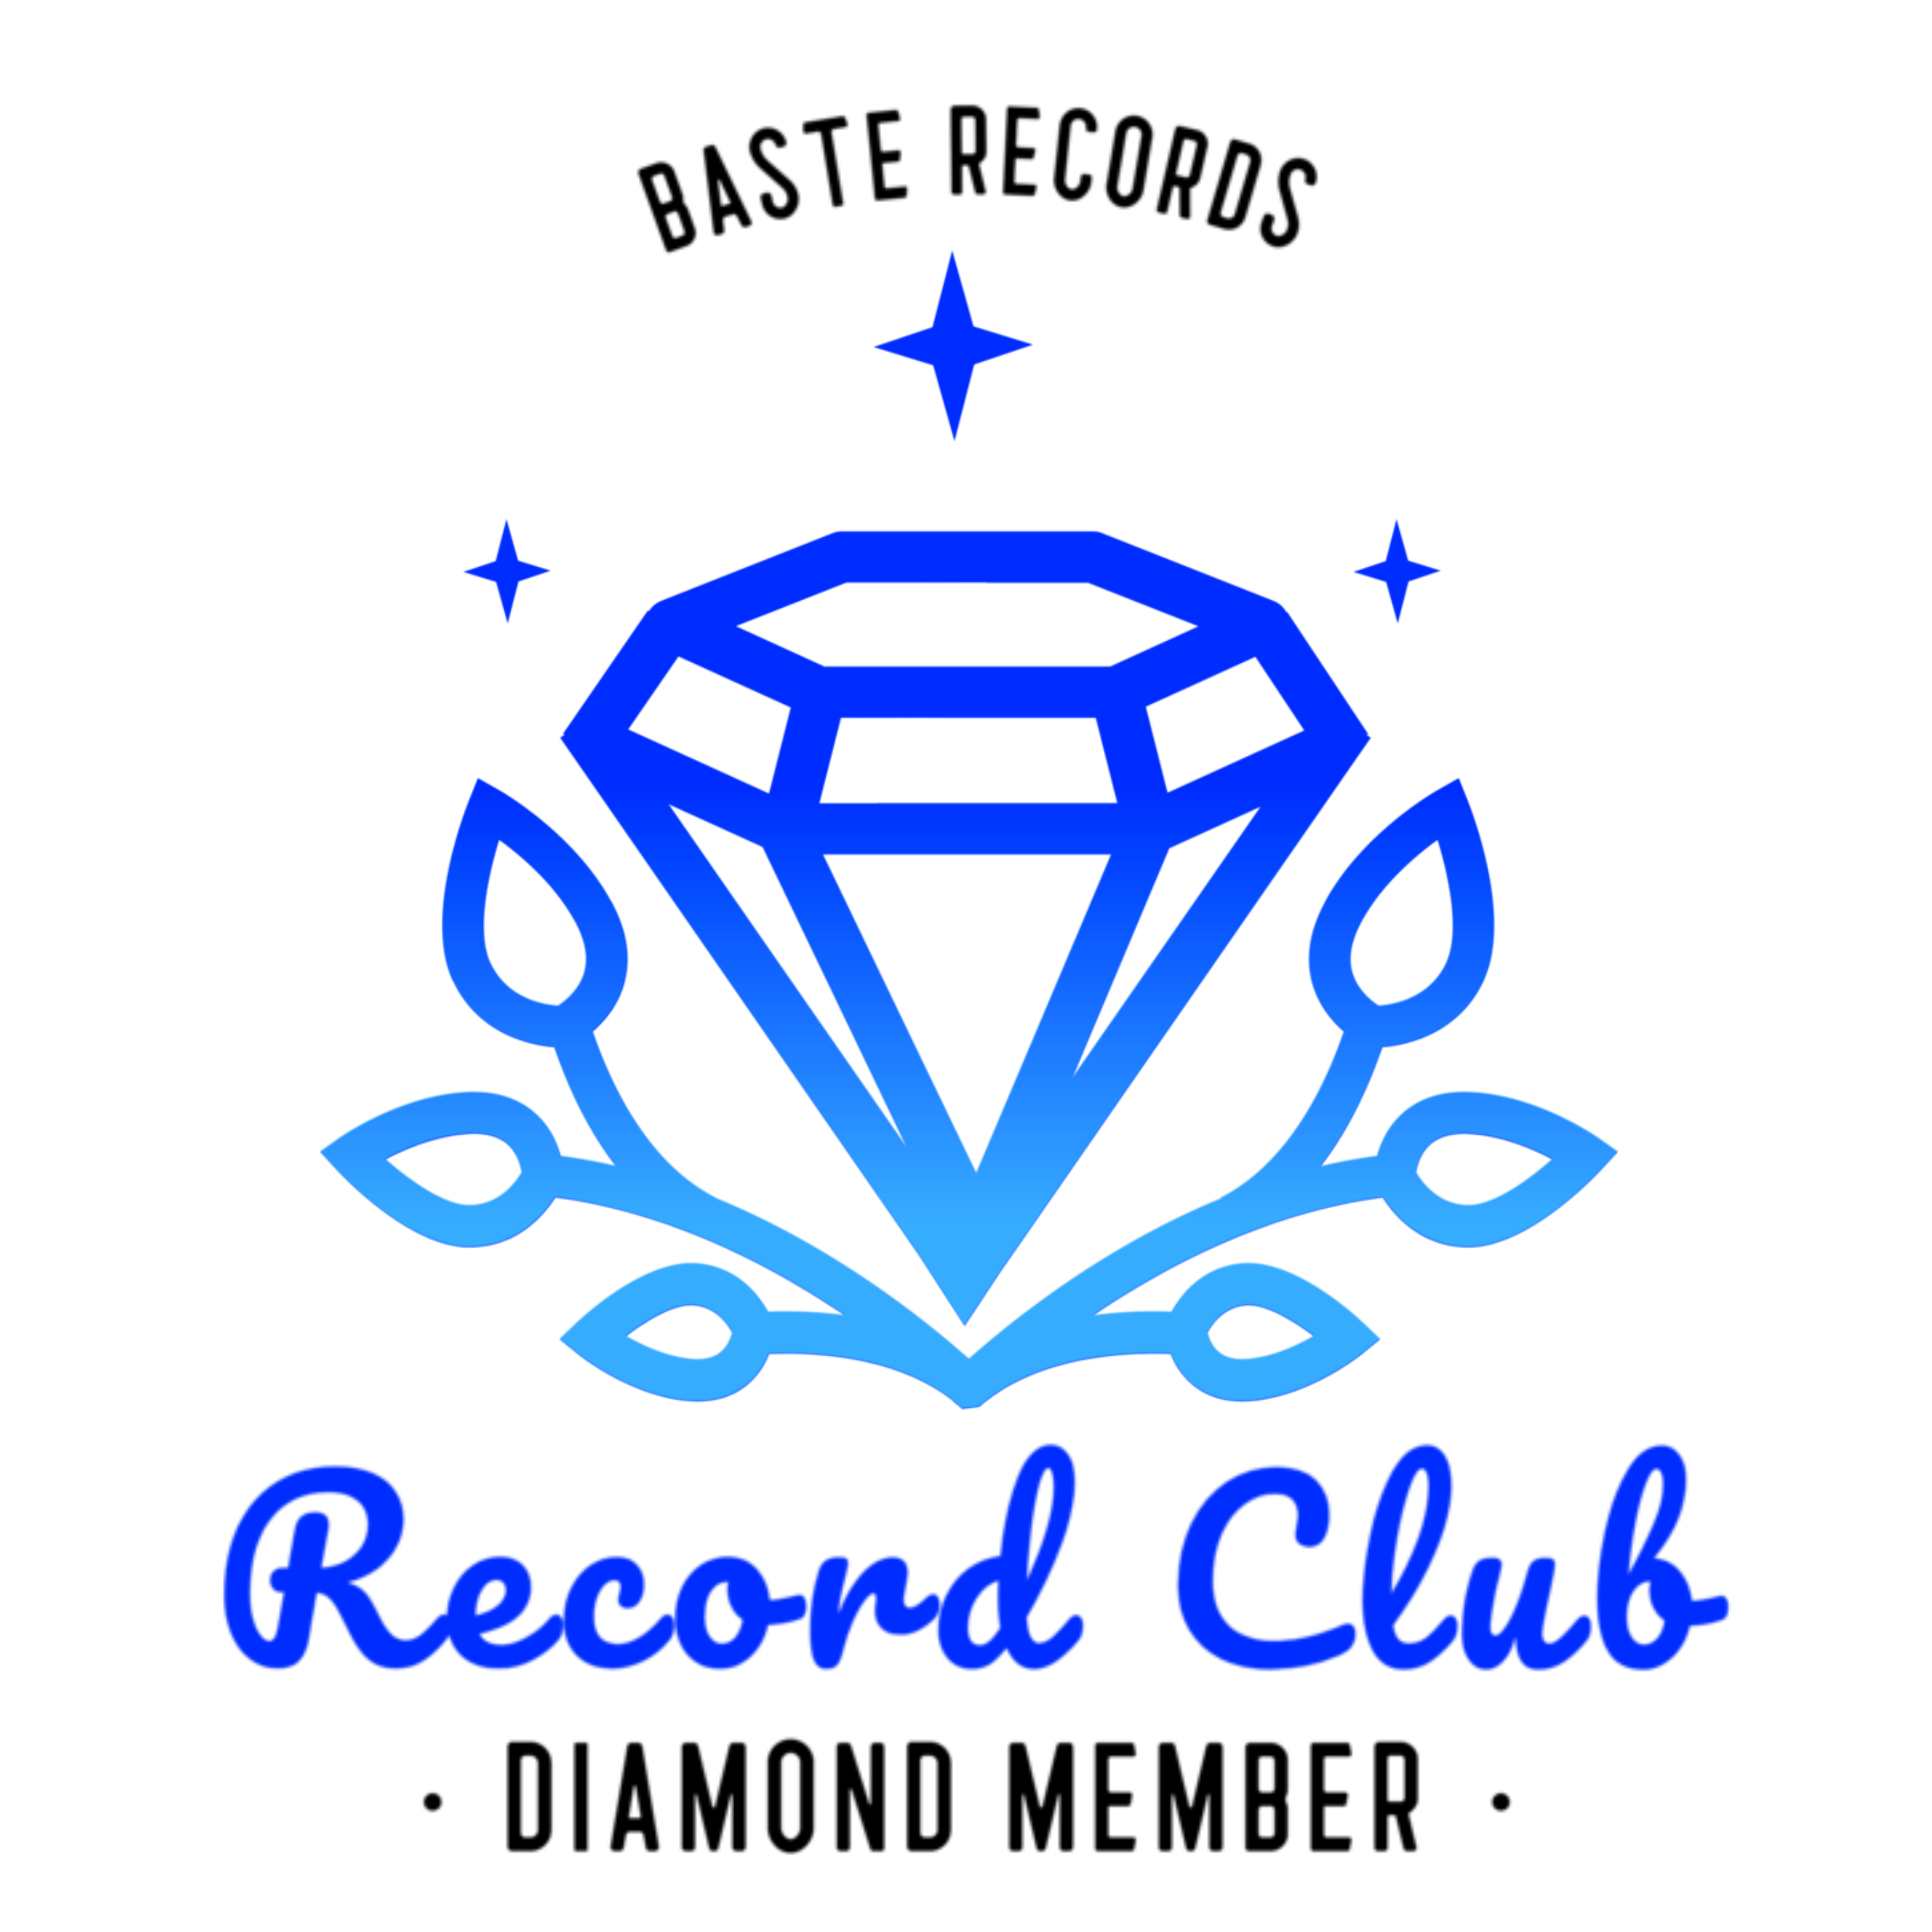 Diamond Member